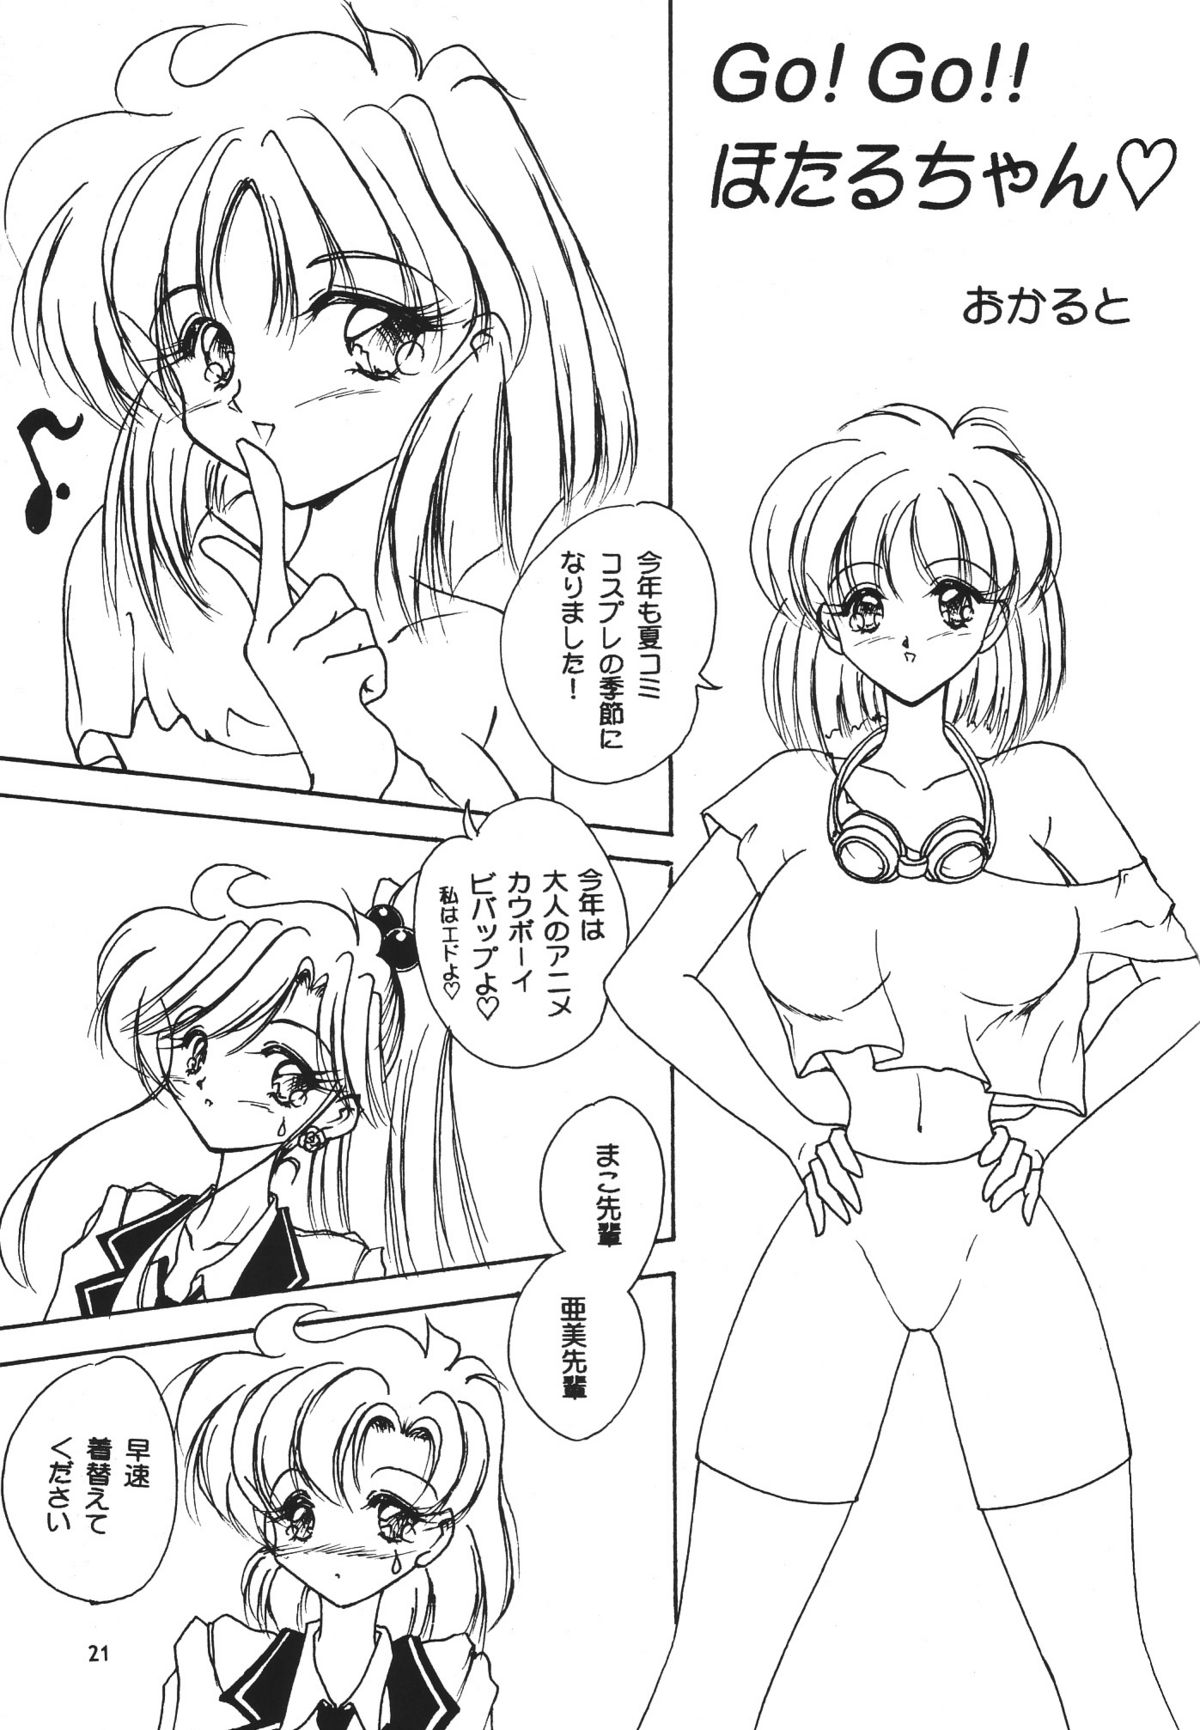 [Seishun No Nigirikobushi!] Favorite Visions 2 (Sailor Moon, AIKa) page 23 full